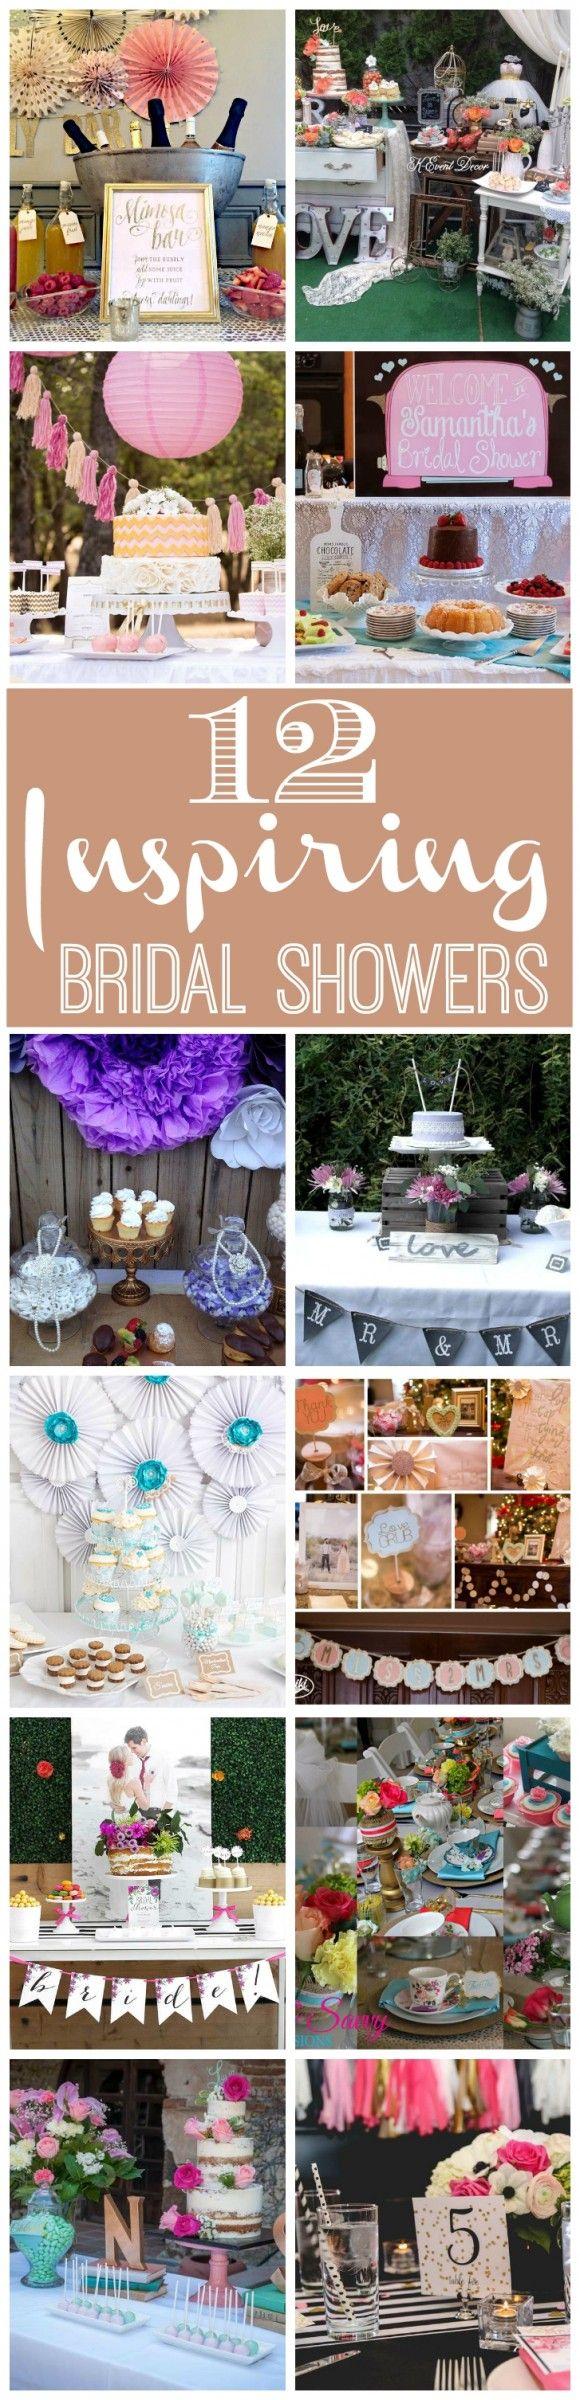 Mariage - 12 Inspiring Bridal Showers